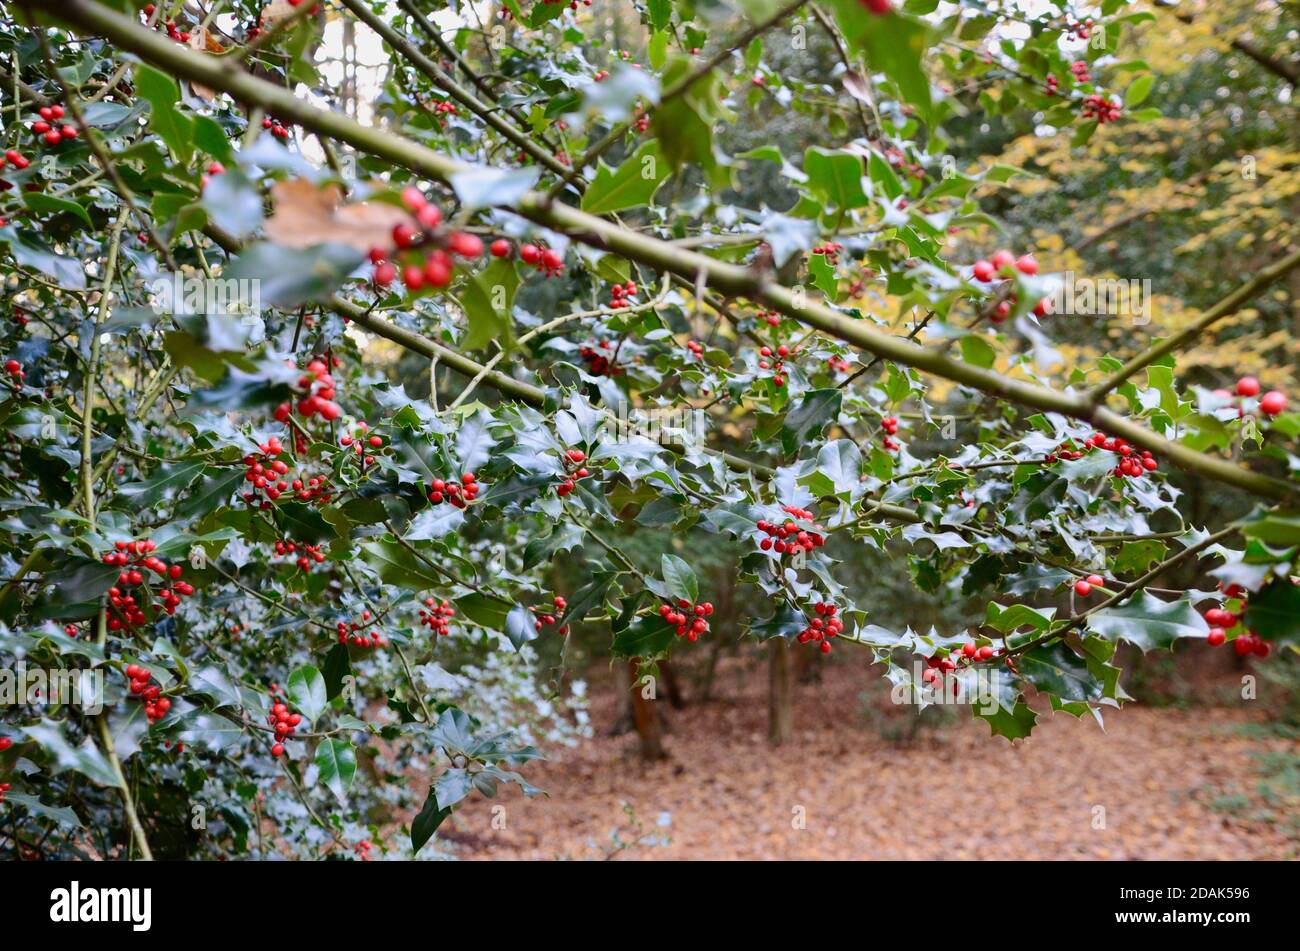 le bacche e le foglie di agrifoglio crescono nel bosco delle regine a nord di londra haringey inghilterra Regno Unito Foto Stock